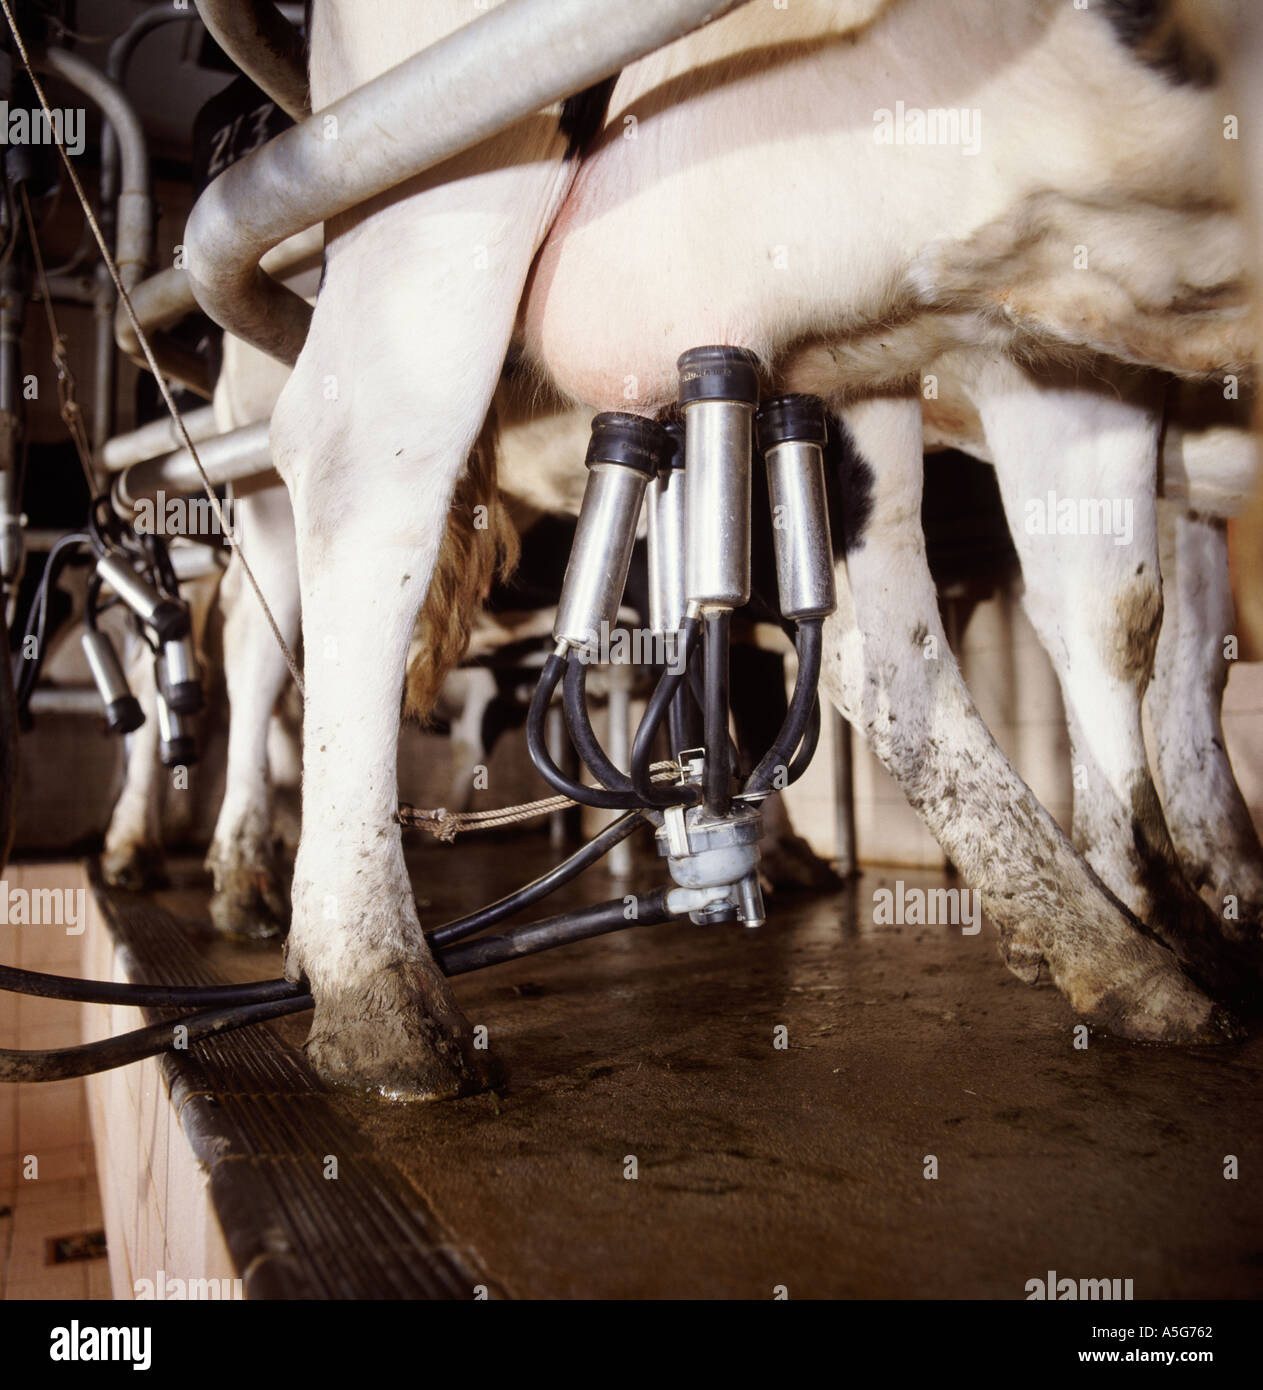 Melkmaschine Cluster auf das Euter einer friesischen Holstein Kuh in der Molkerei Stockfoto